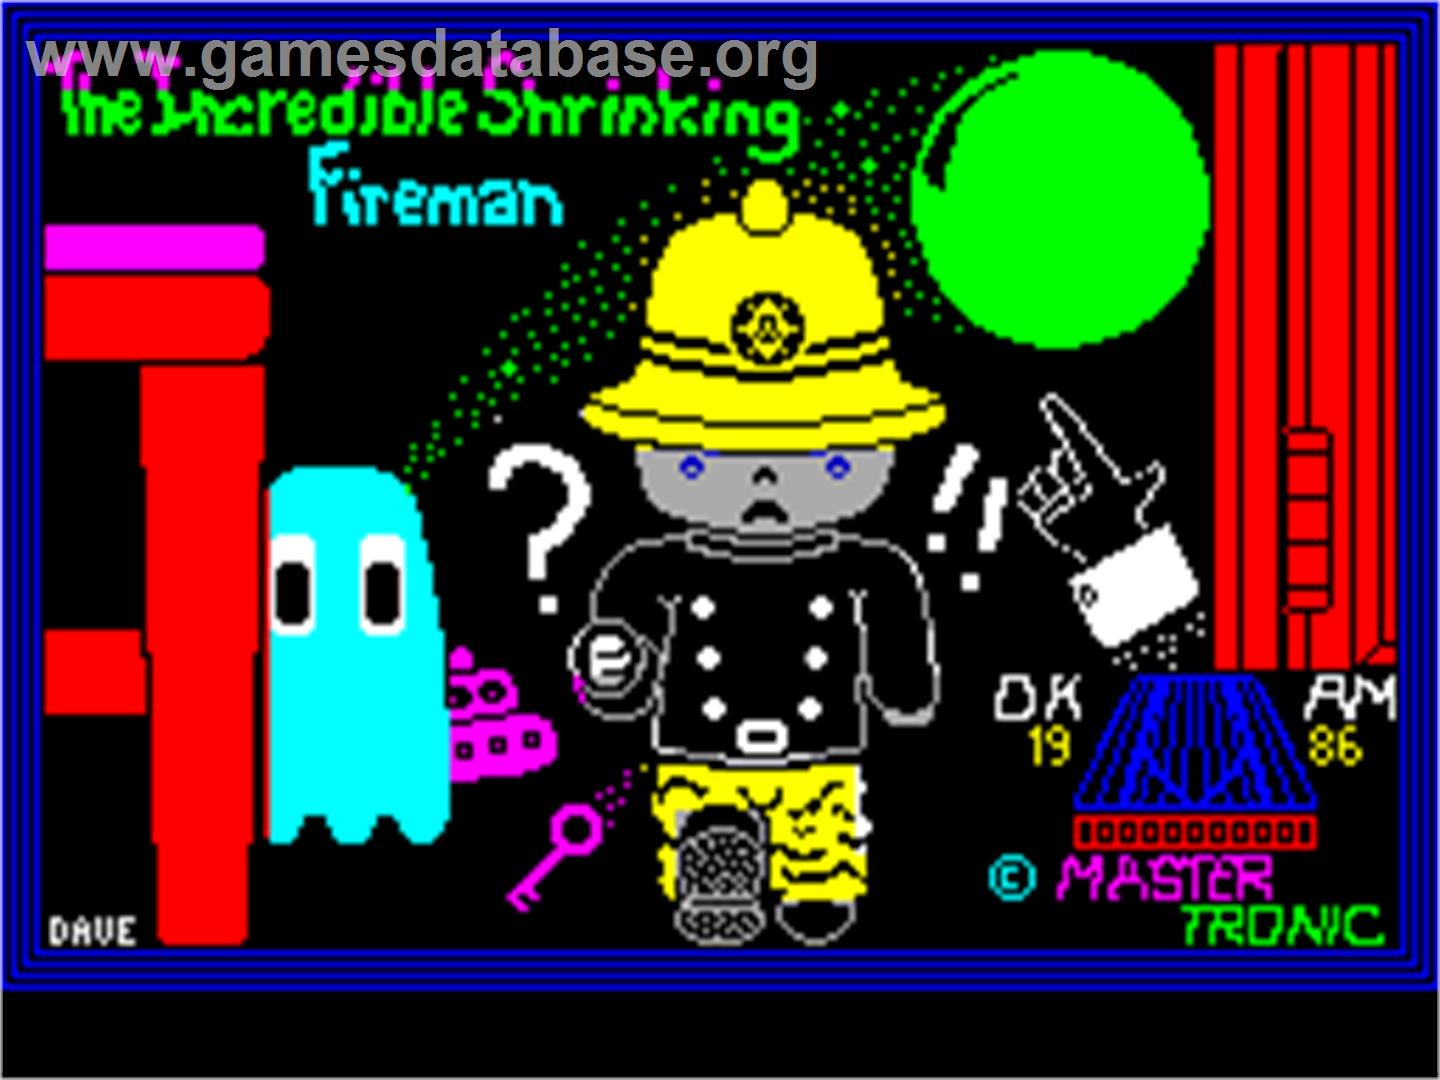 Incredible Shrinking Fireman - Sinclair ZX Spectrum - Artwork - Title Screen